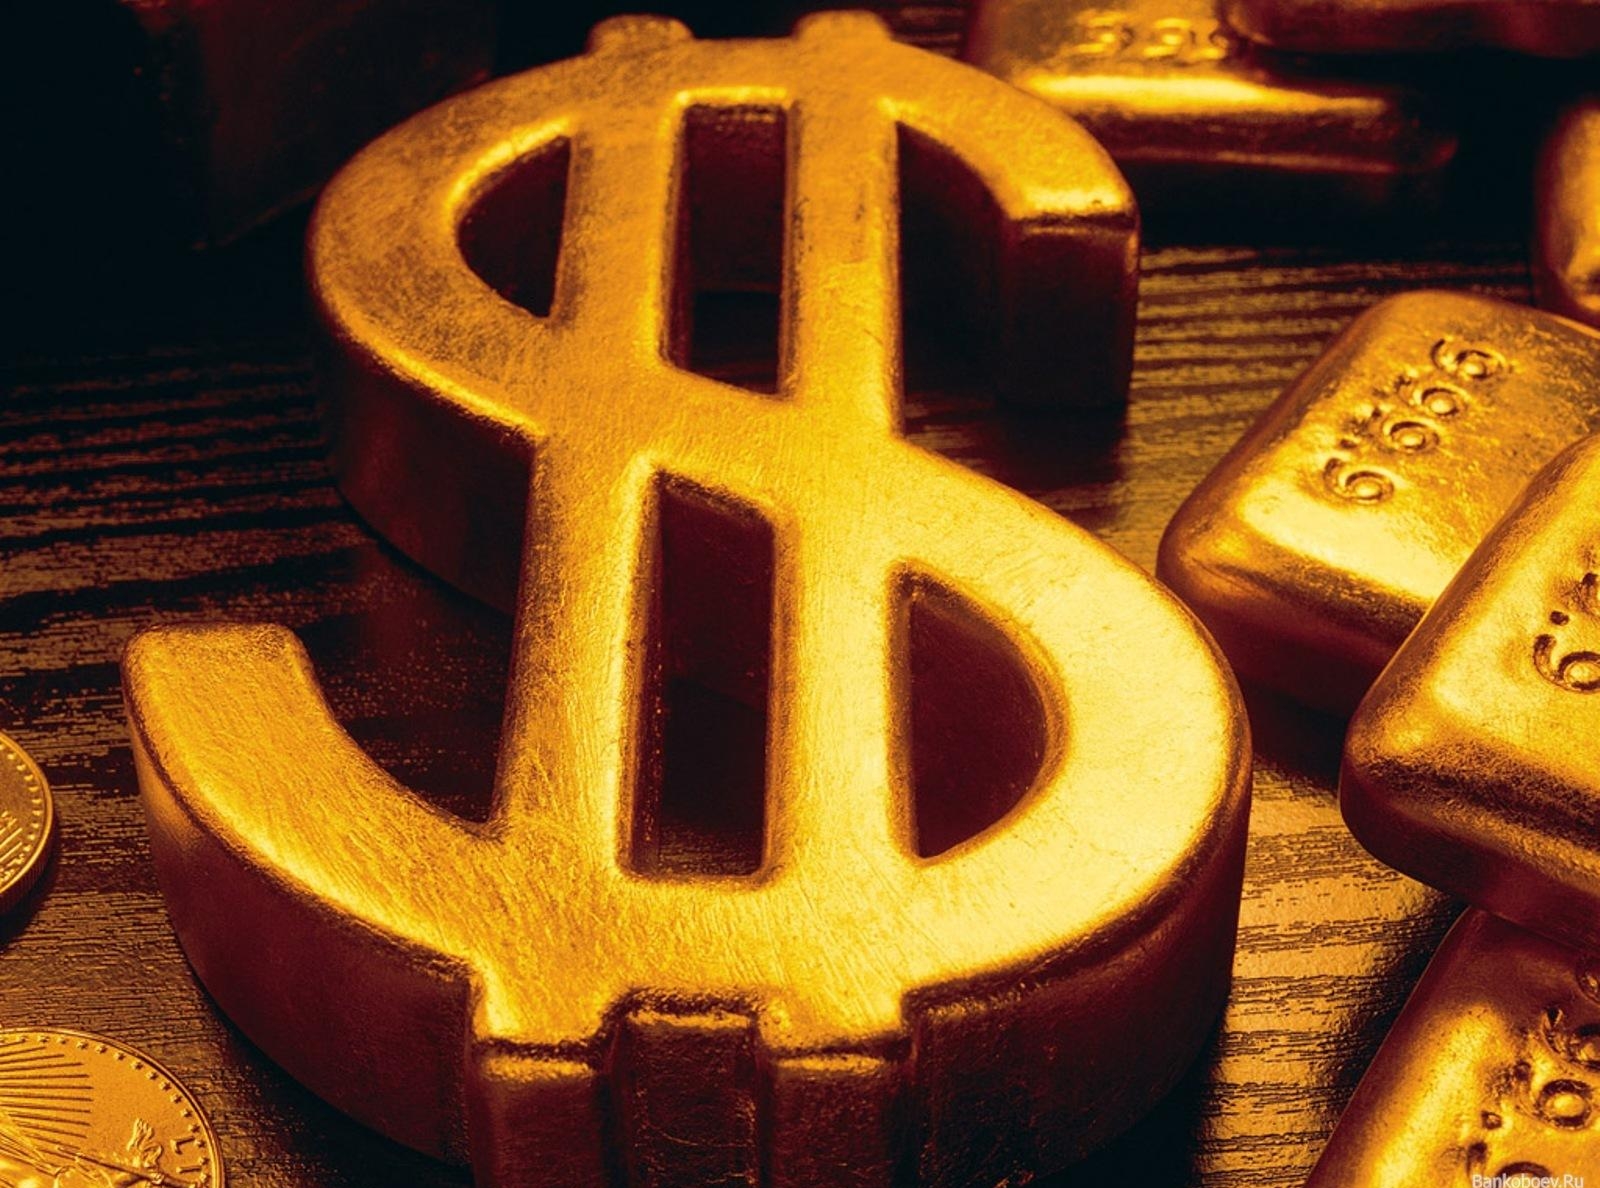 Золото (commodity) может подняться до 1415 долларов за унцию